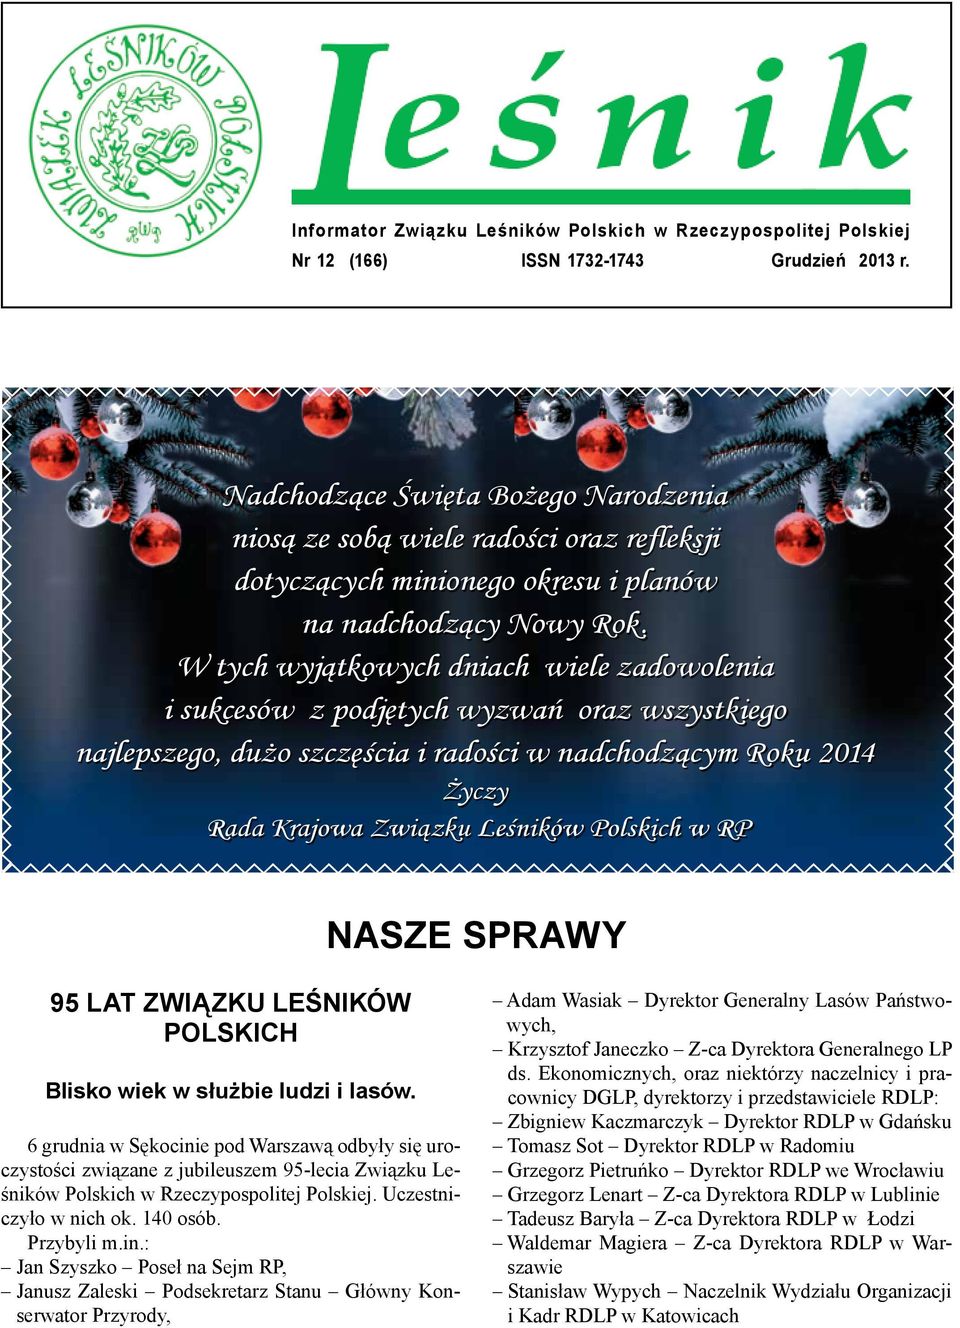 W tych wyjątkowych dniach wiele zadowolenia i sukcesów z podjętych wyzwań oraz wszystkiego najlepszego, dużo szczęścia i radości w nadchodzącym Roku 2014 Życzy Rada Krajowa Związku Leśników Polskich